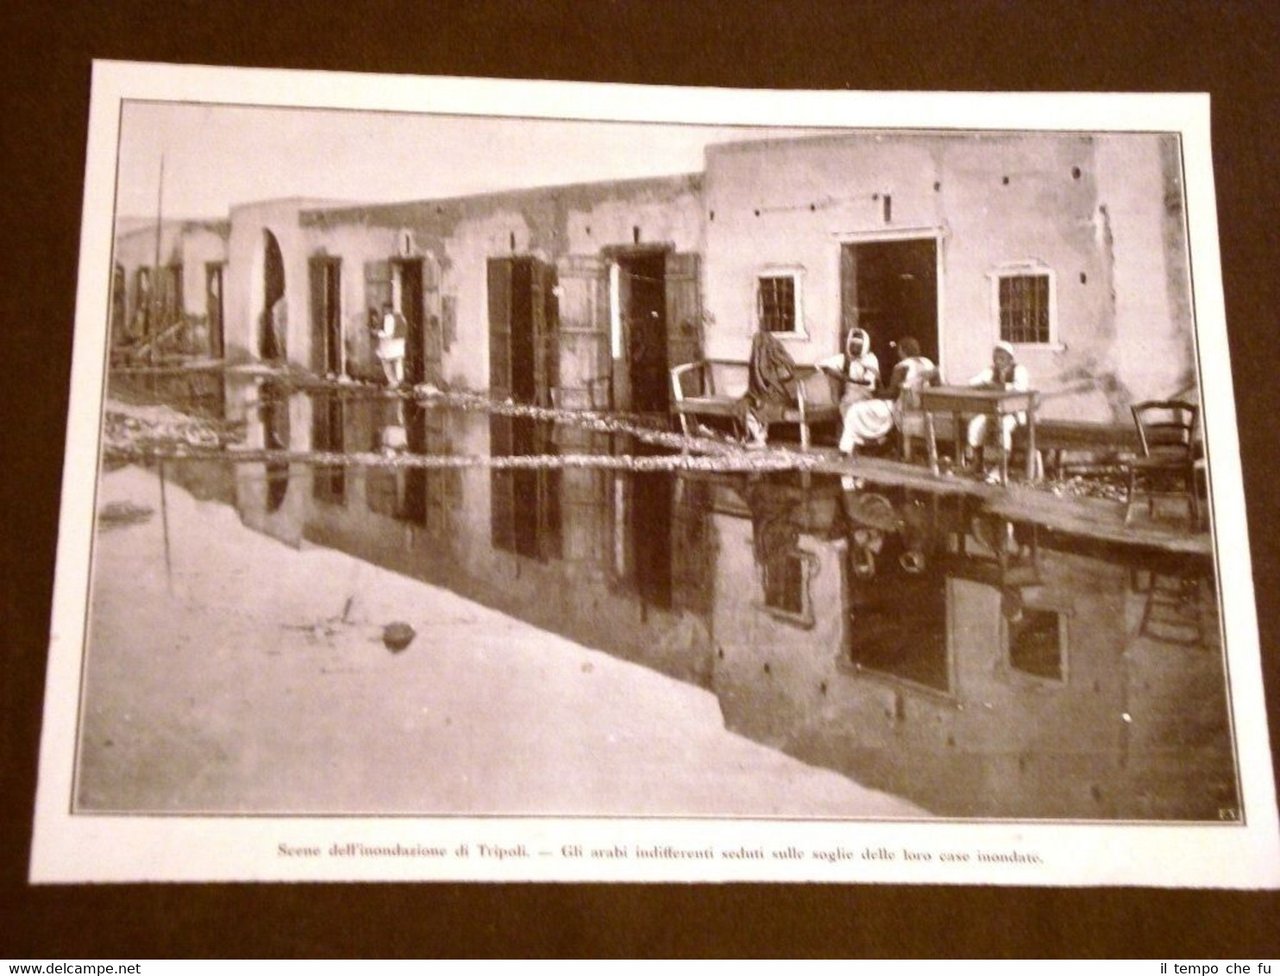 Spedizione d'Italia in Libia o Tripolitania nel 1911 L'inondazione di …